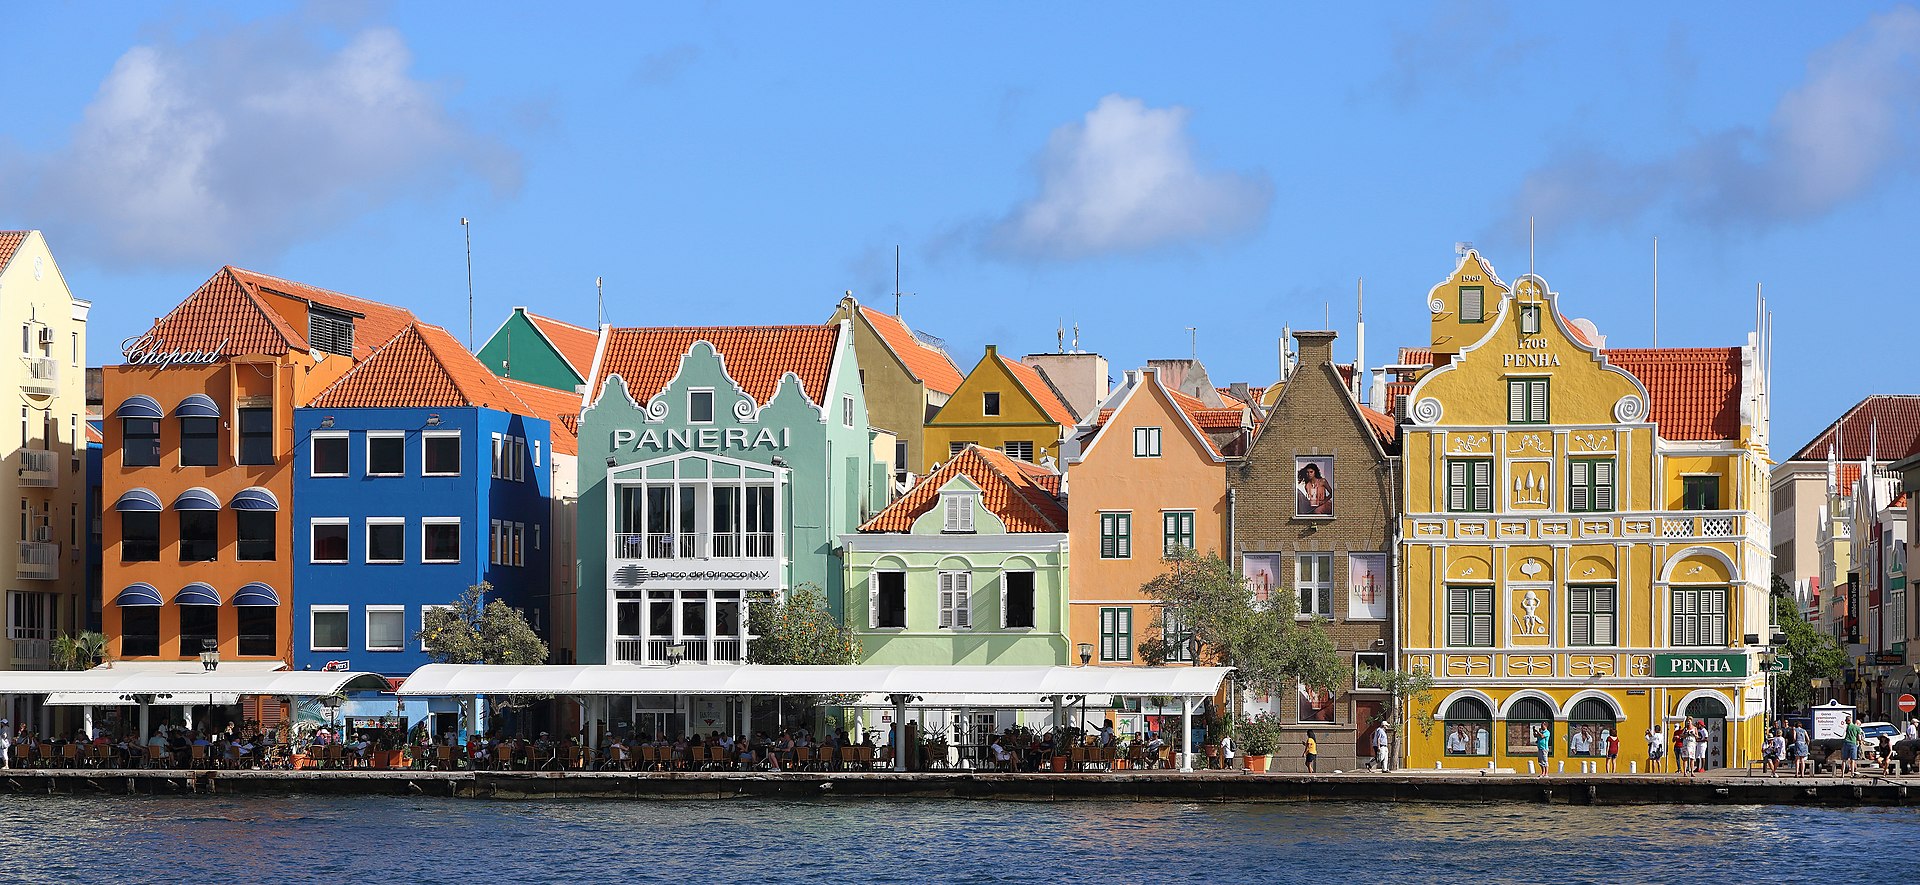  Handelskade, Willemstad, Curaçao- 2020.jpg